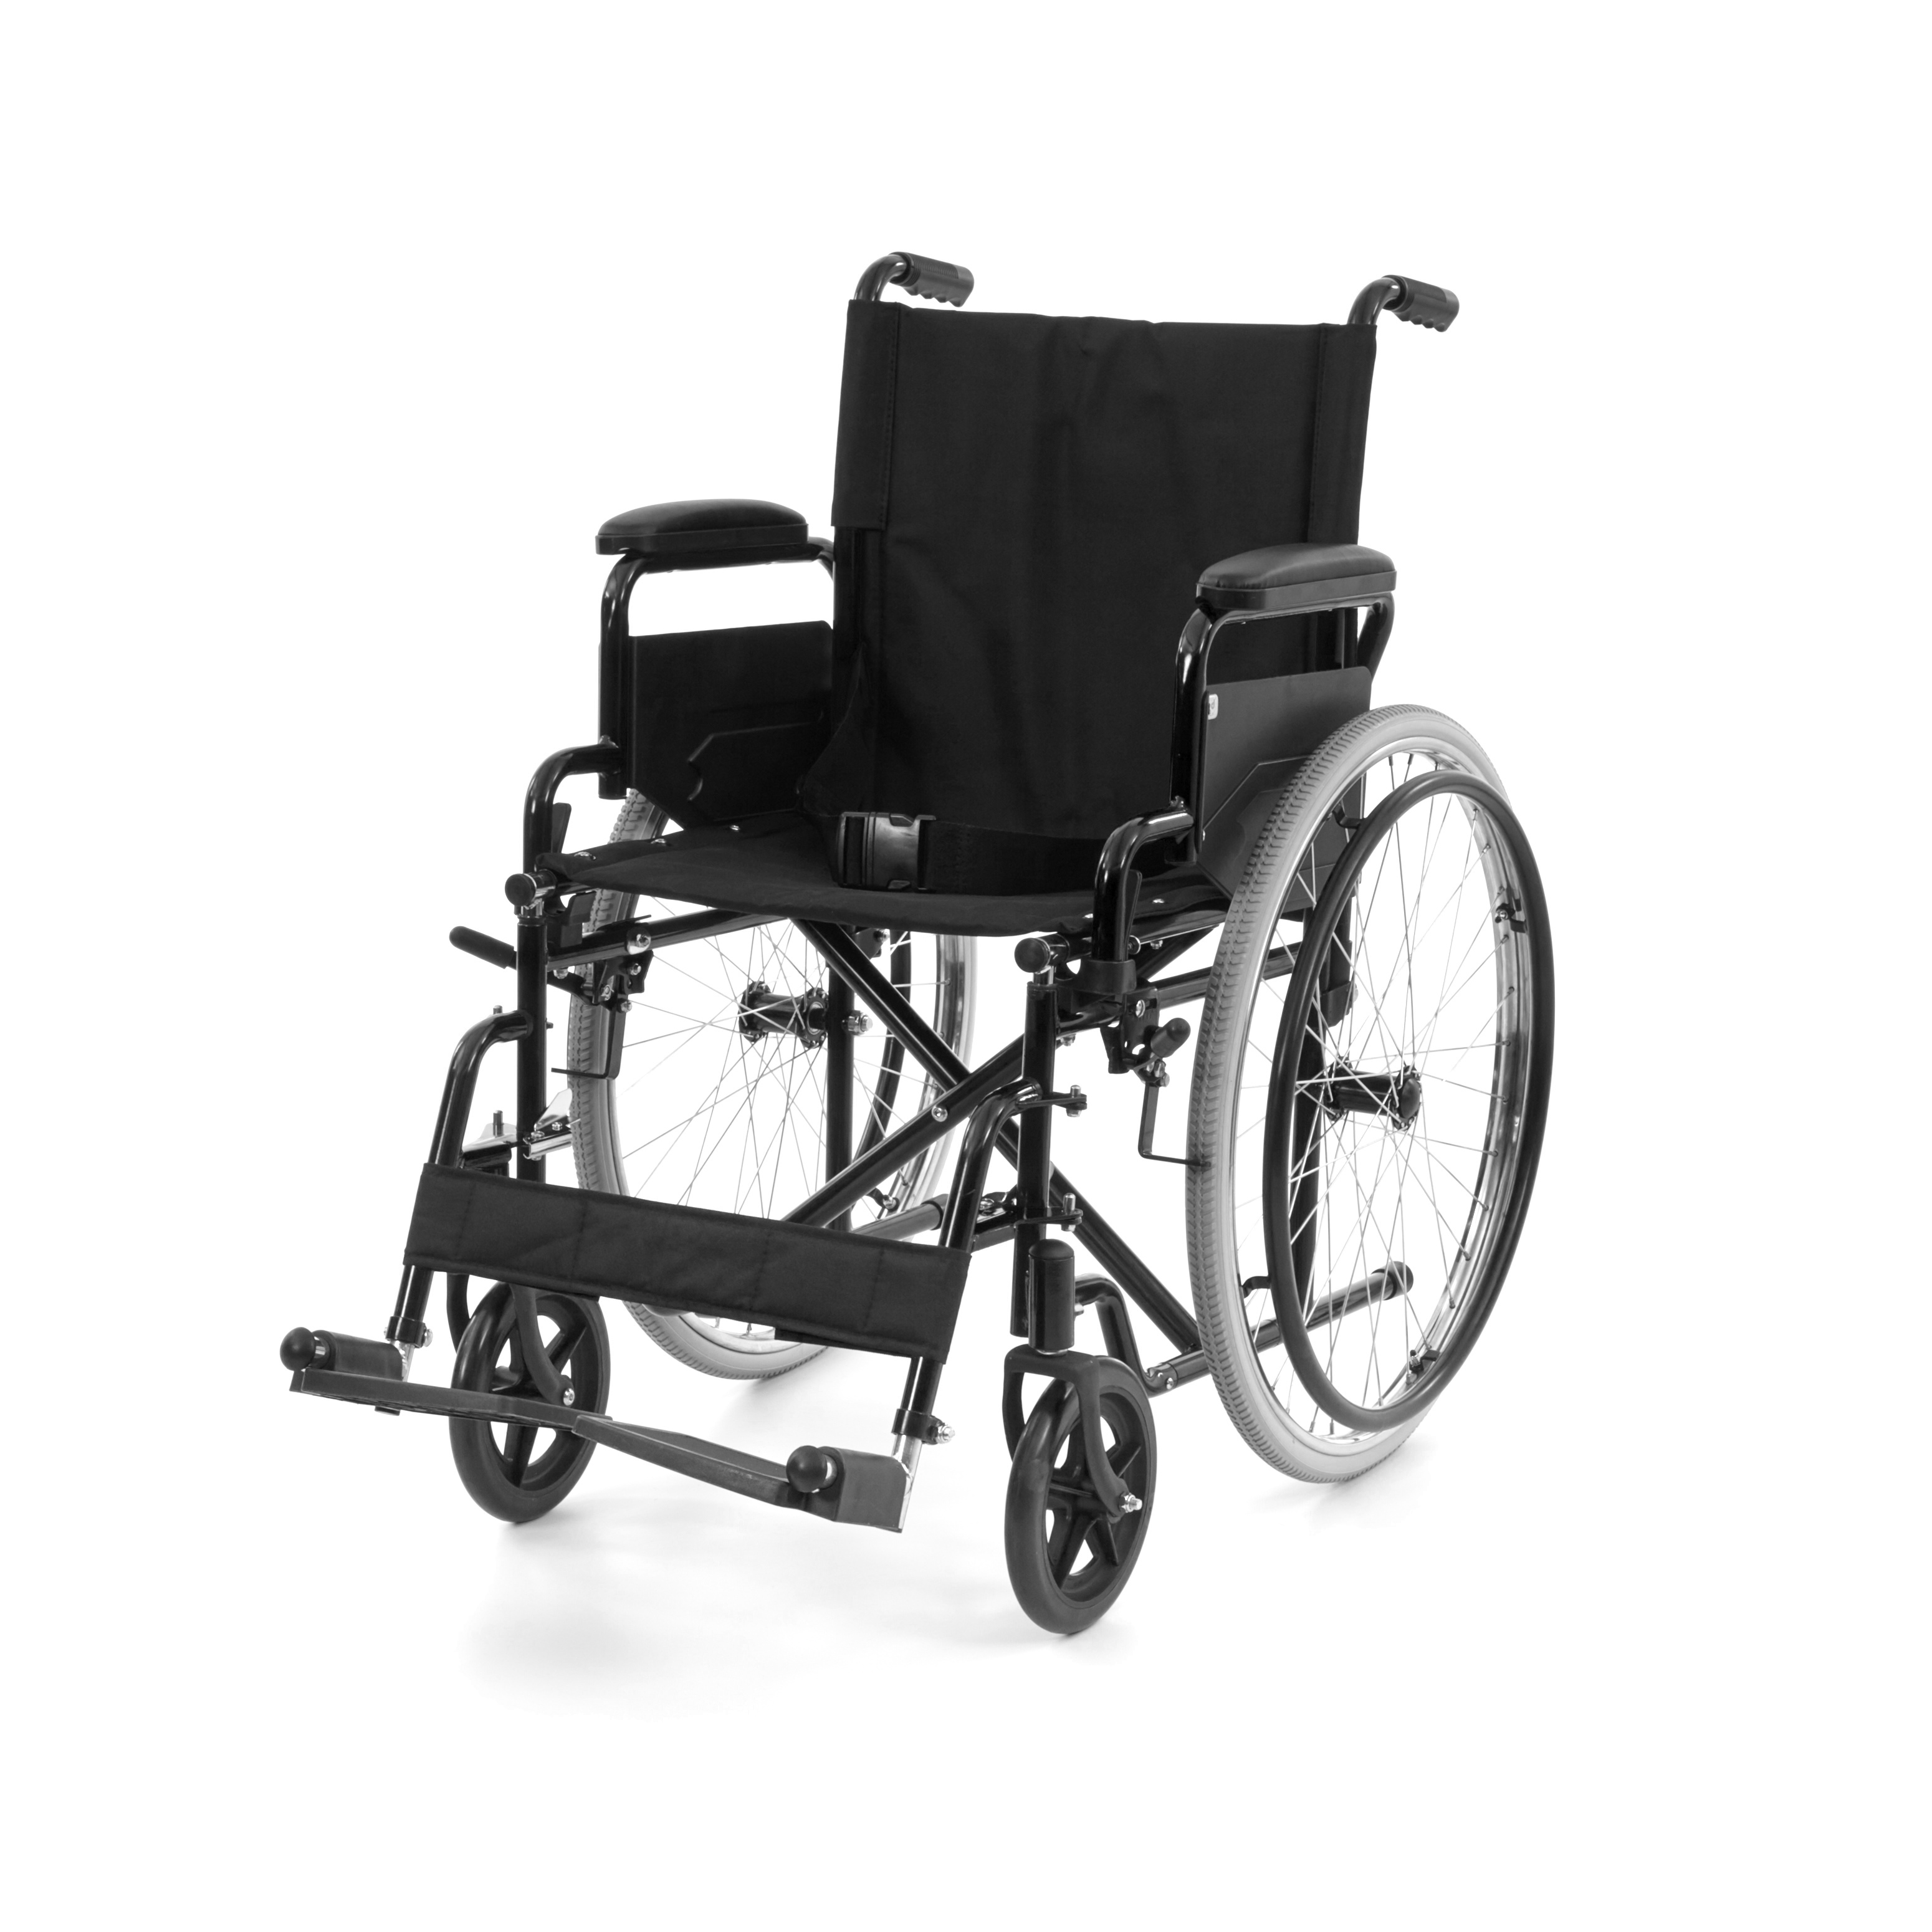 WHE-01-BLACK Sedia a rotelle manuale pieghevole, nera, con bracciolo ribaltabile e poggiapiedi ribaltabile, per pezzo per collo.